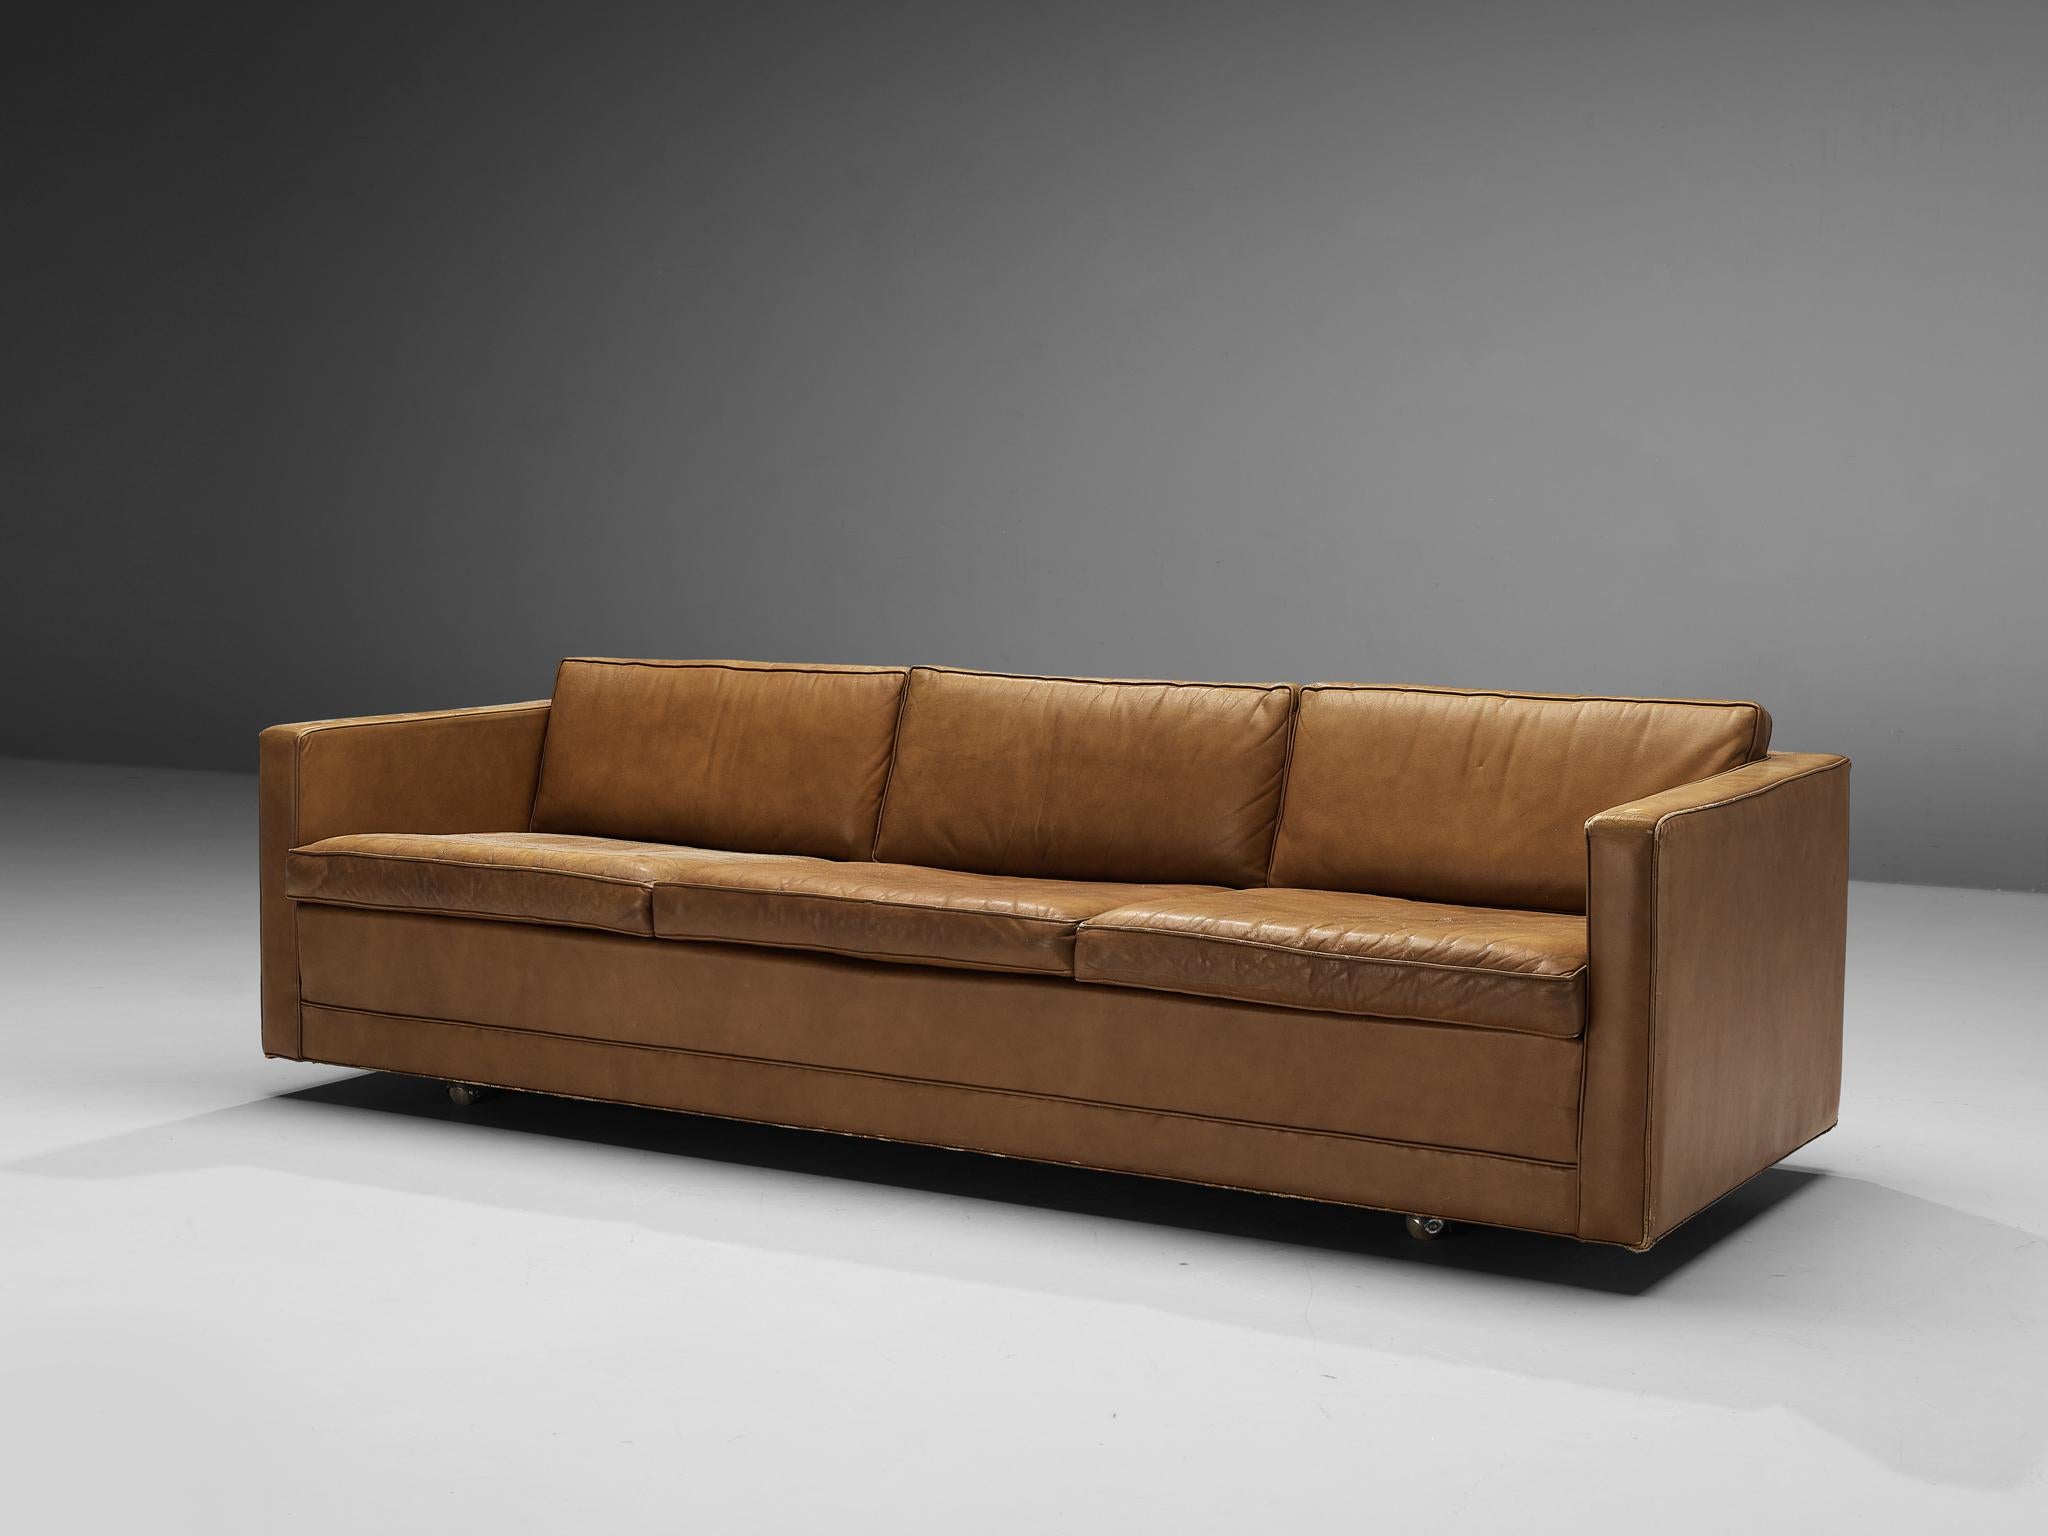 Artifort, Sofa, Leder, Metall, Die Niederlande, 1970er

Dieses kubische Sofa zeichnet sich durch klare Linien aus, die einen kühnen Look ergeben. Die Rückenlehne und die Armlehnen sind auf gleicher Höhe. Der Bezug aus patiniertem braunem Leder